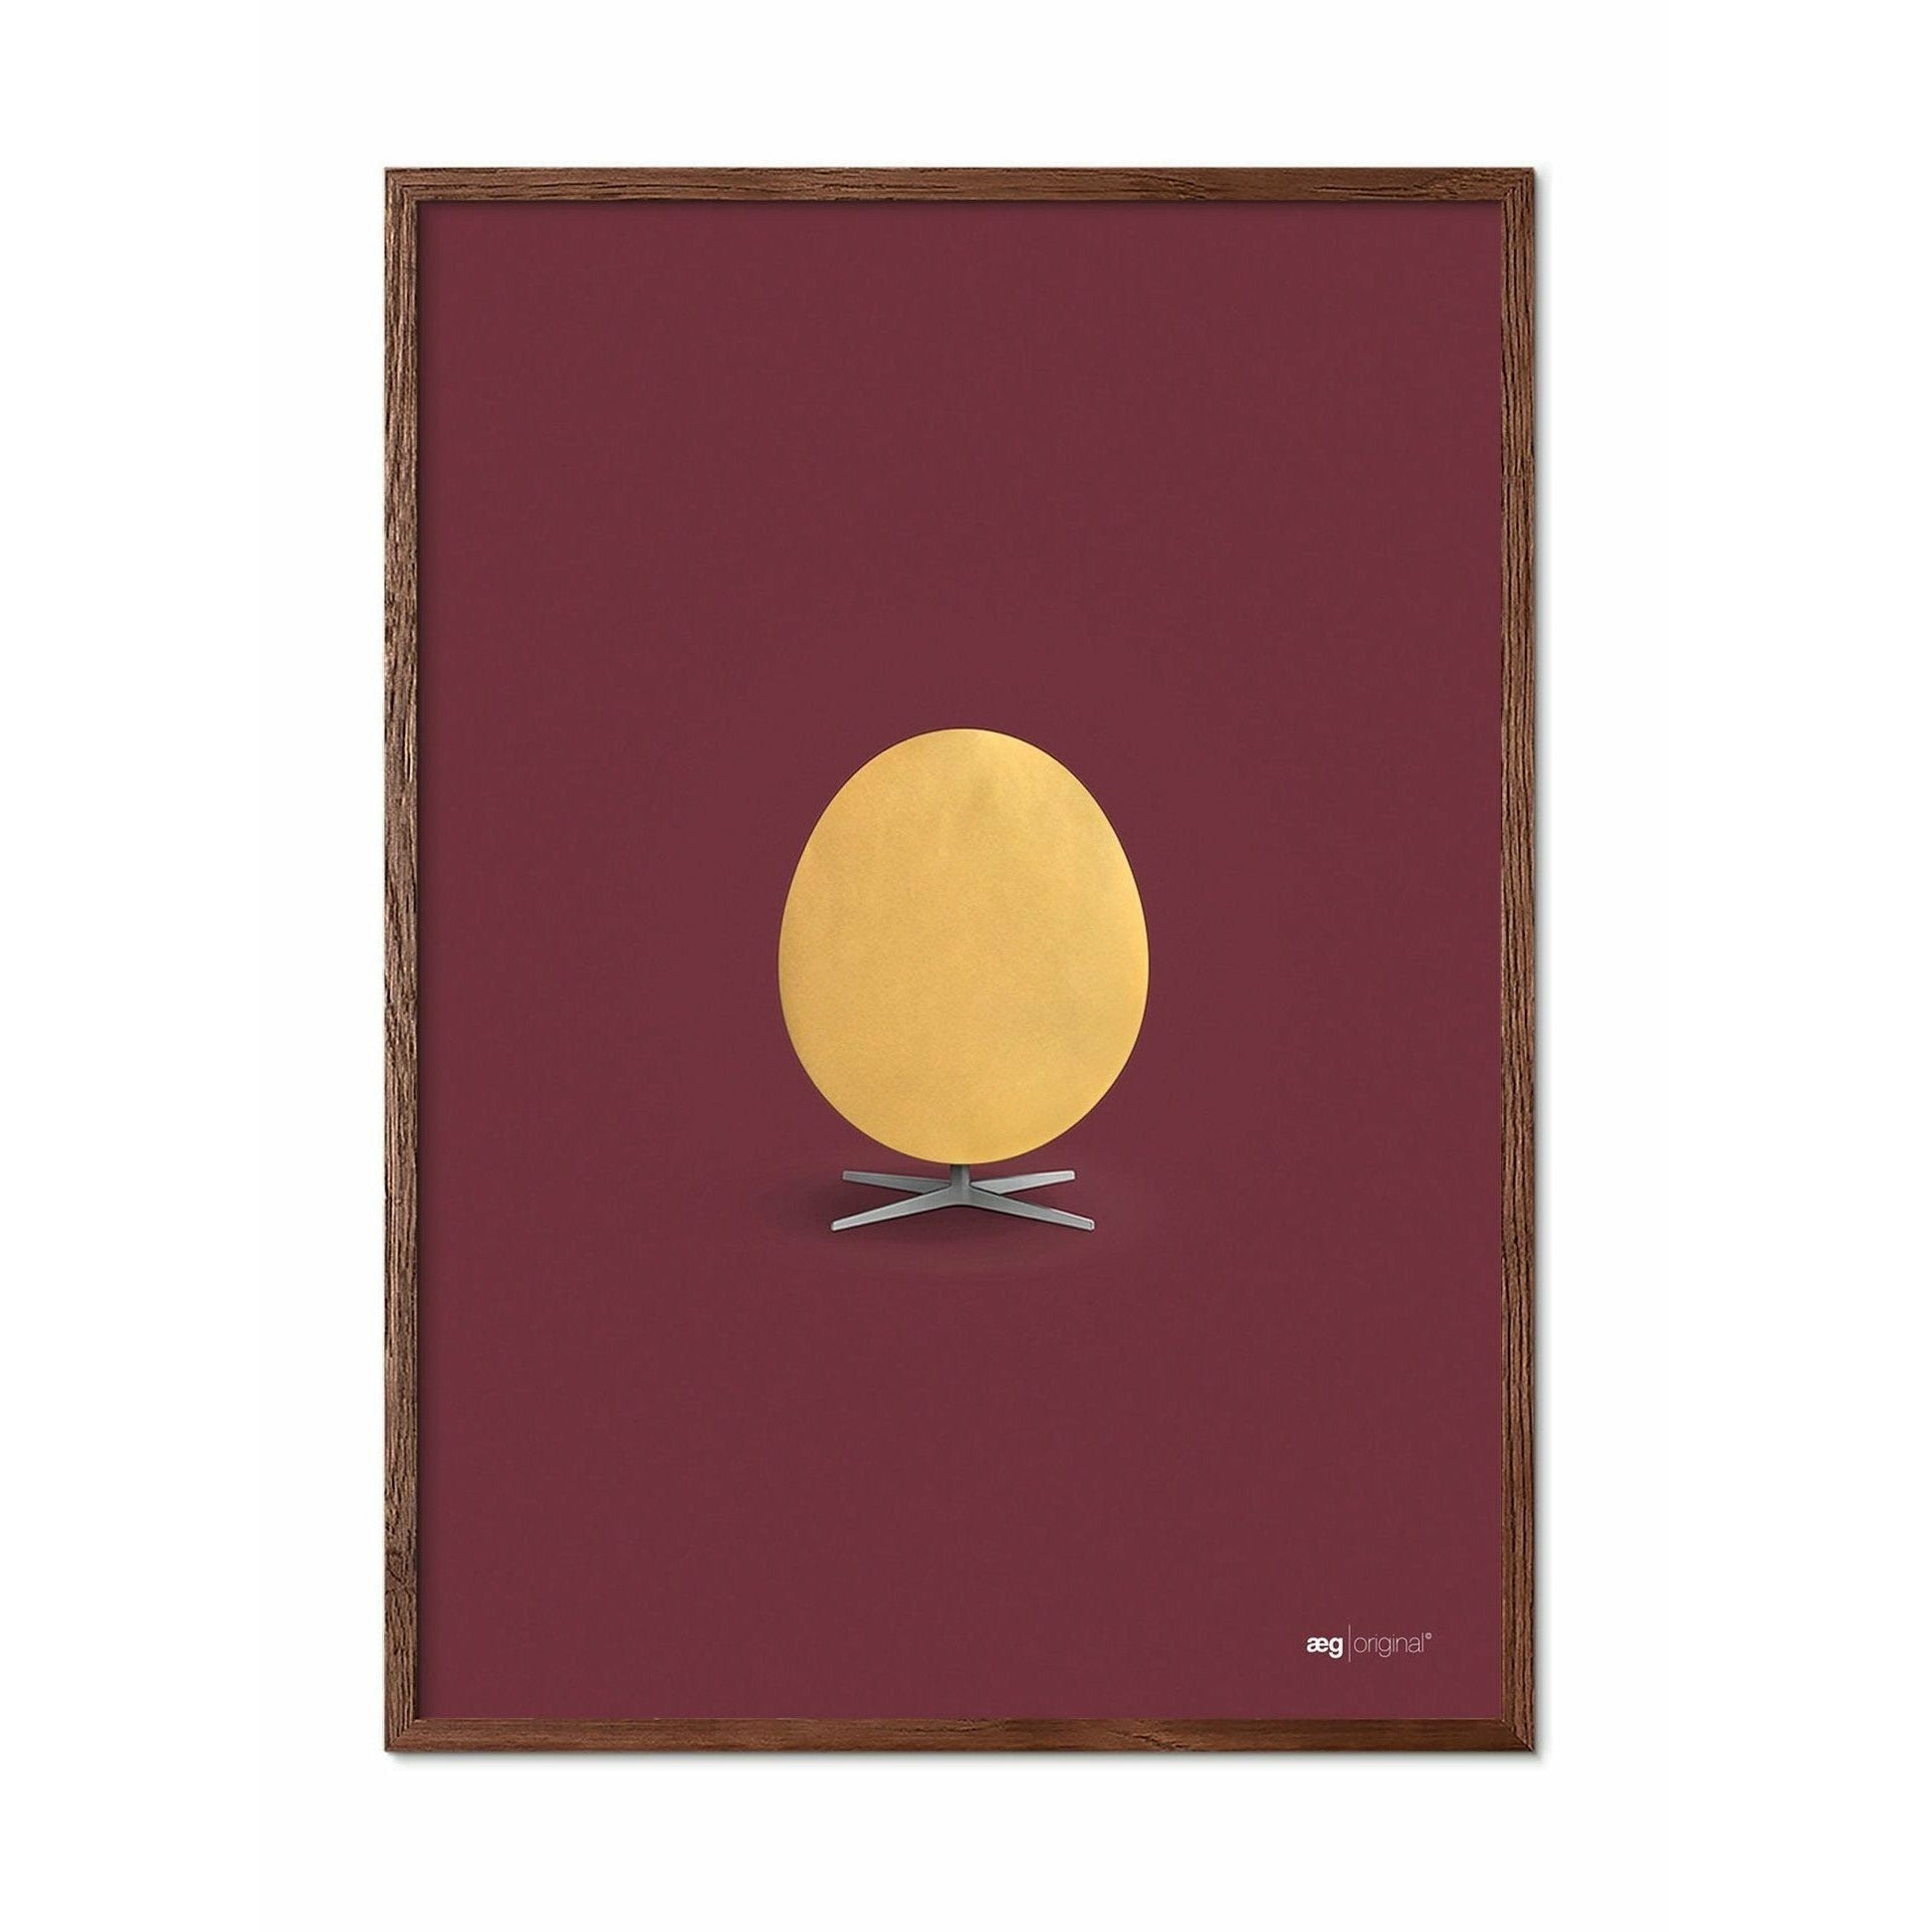 Brainchild Egg Poster, Dark Wood Frame A5, Gold/Bordeaux Bakgrunn